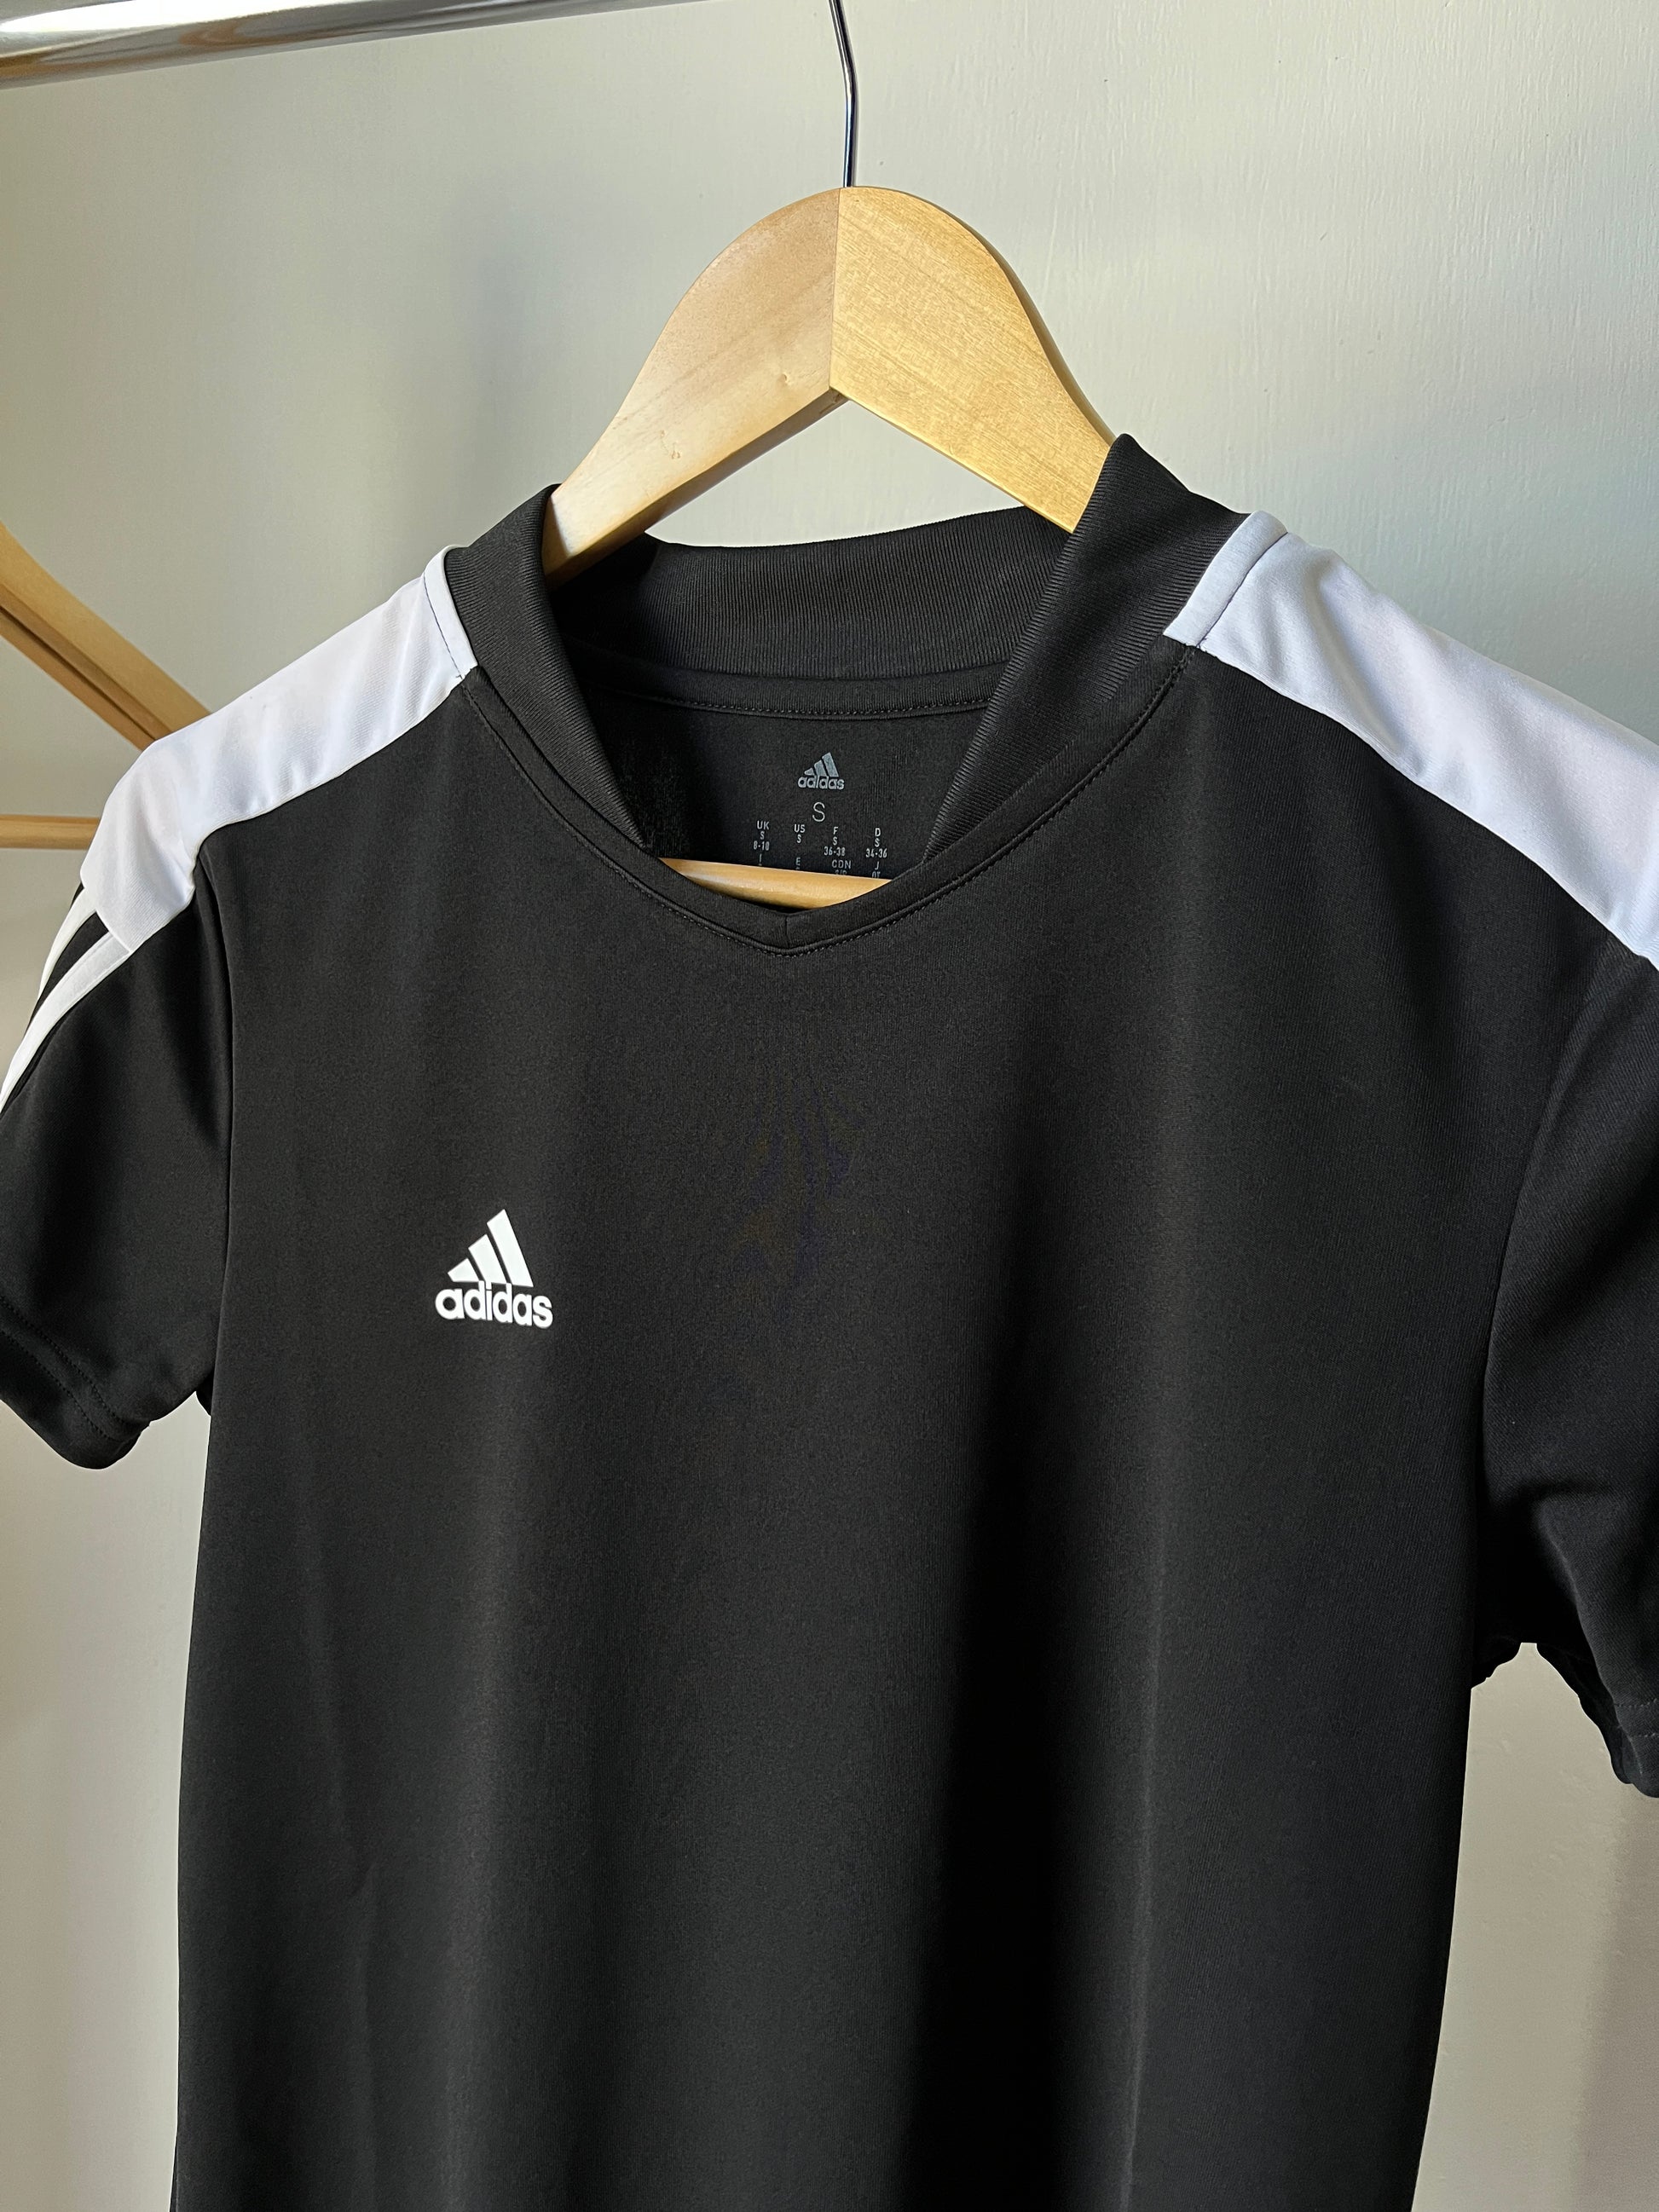 Prever Forzado estudiar Playera Adidas Negra Deportiva – Asax Shop